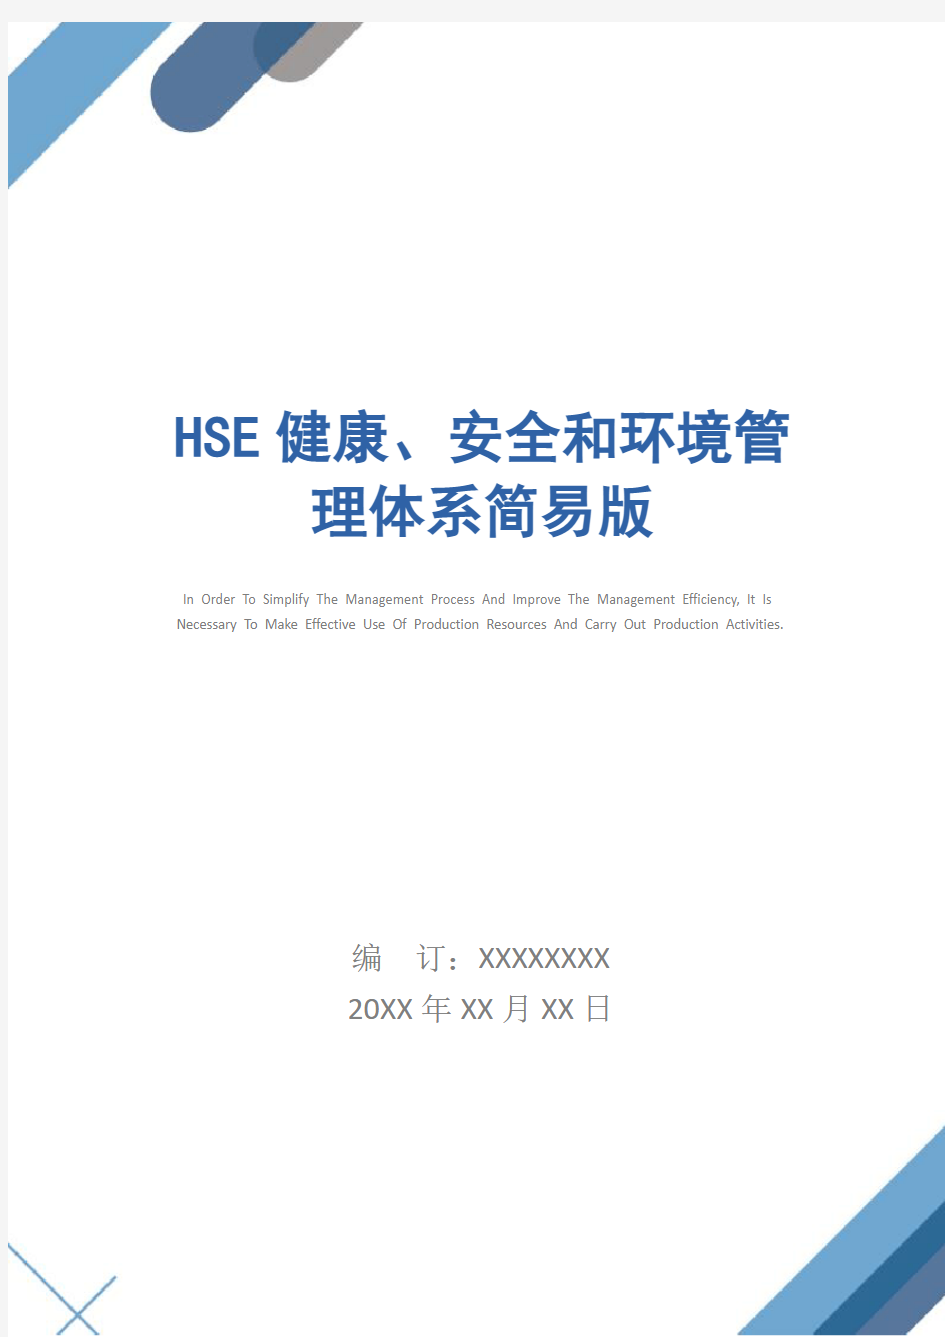 HSE健康、安全和环境管理体系简易版